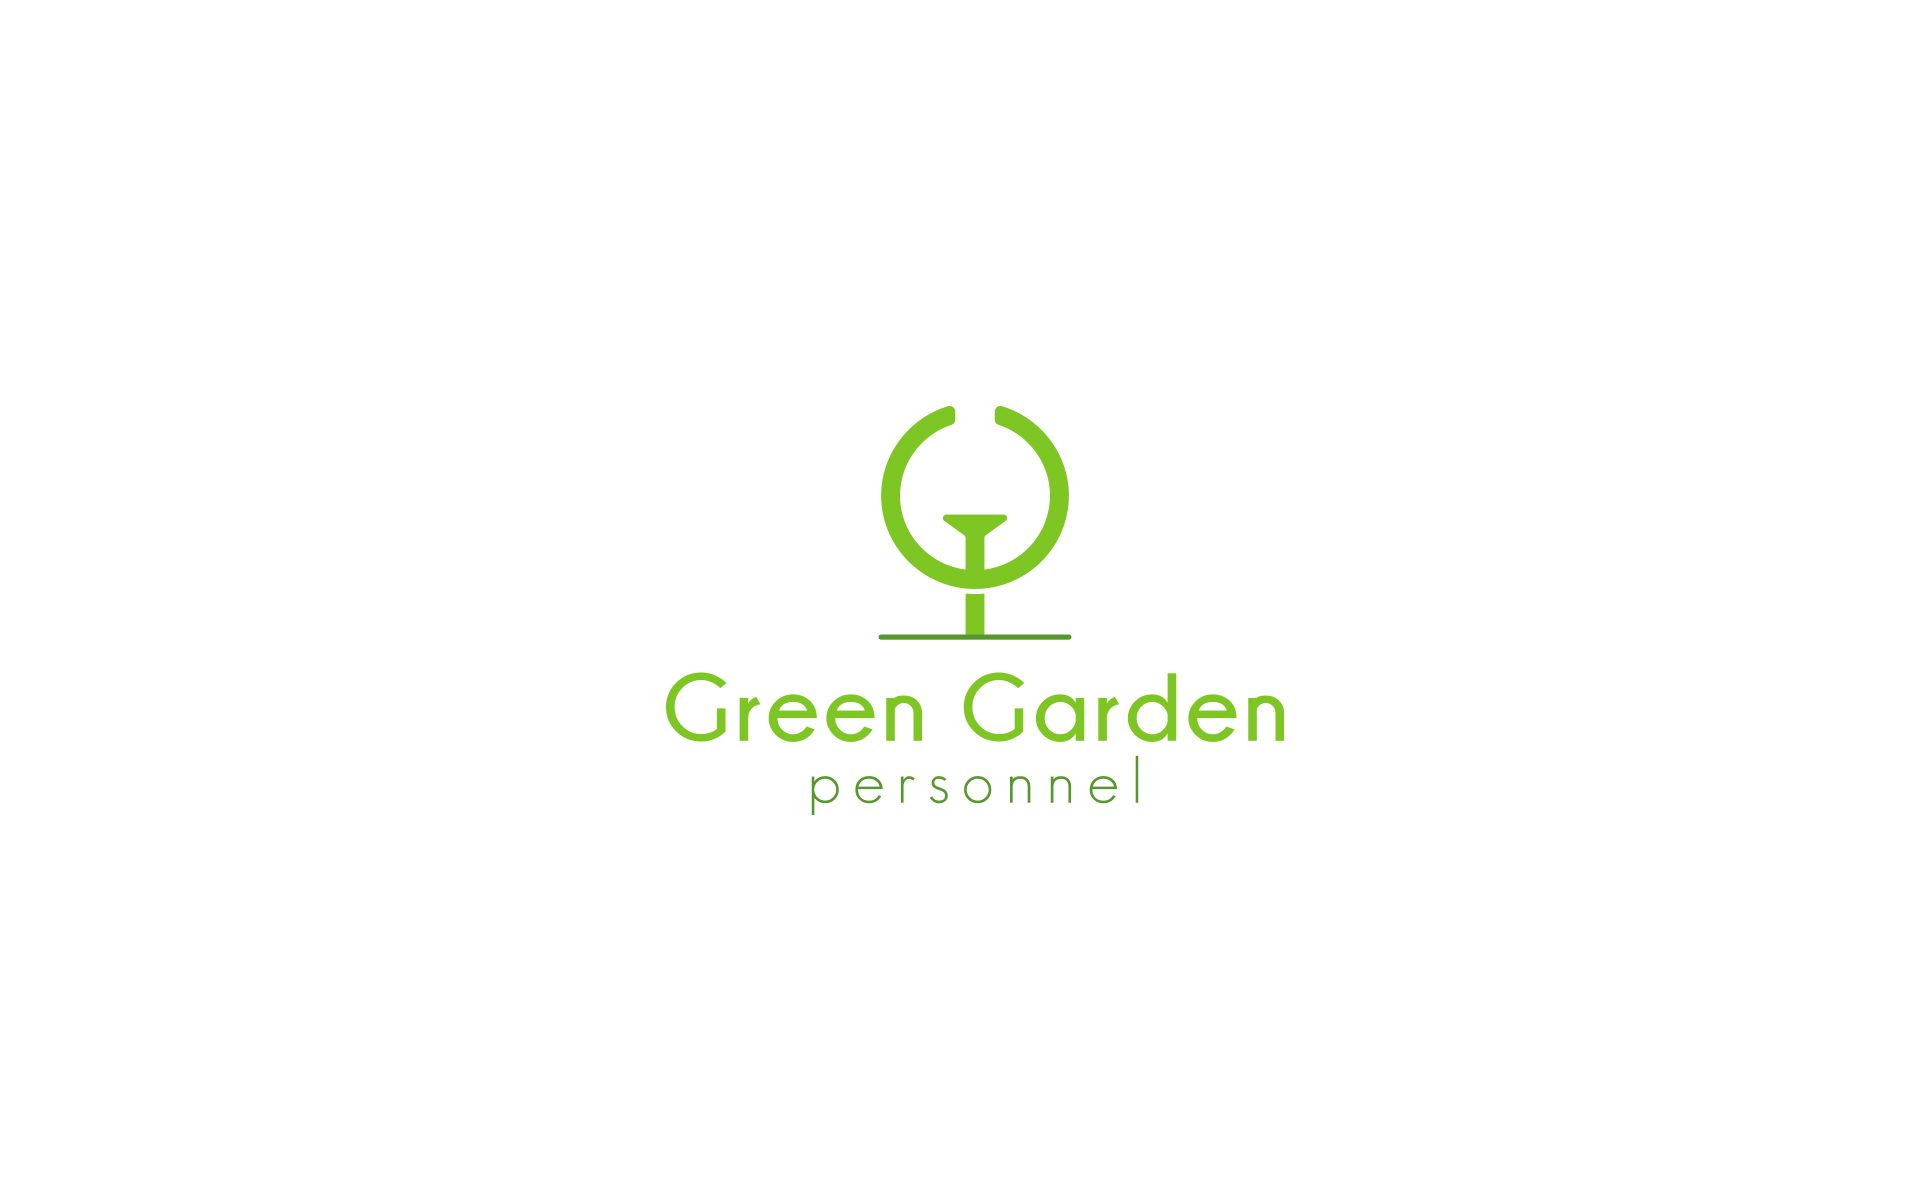  Фирм. стиль для Green Garden Personnel - дизайнер U4po4mak